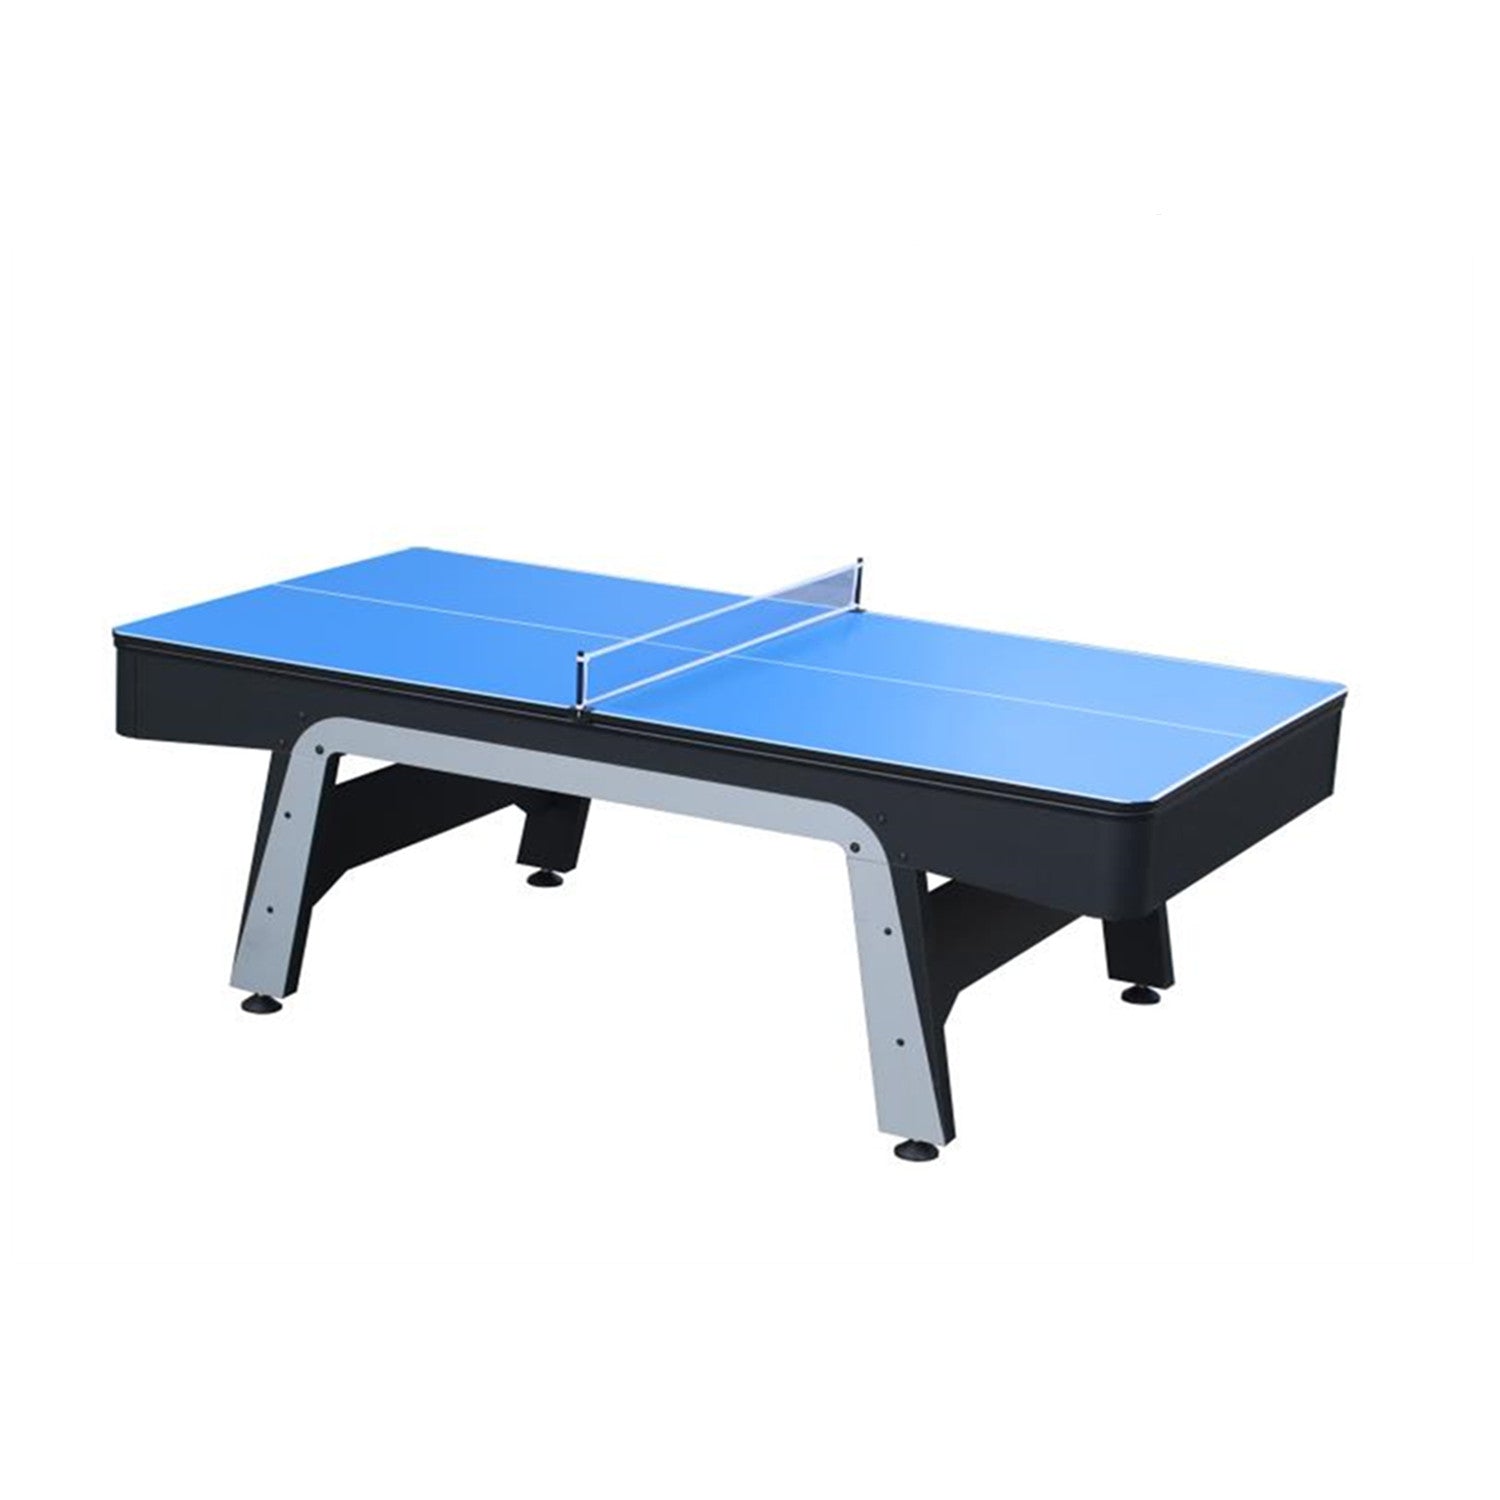 StarTrek 3IN1 Pool Table-8FT Blue/Top Storage